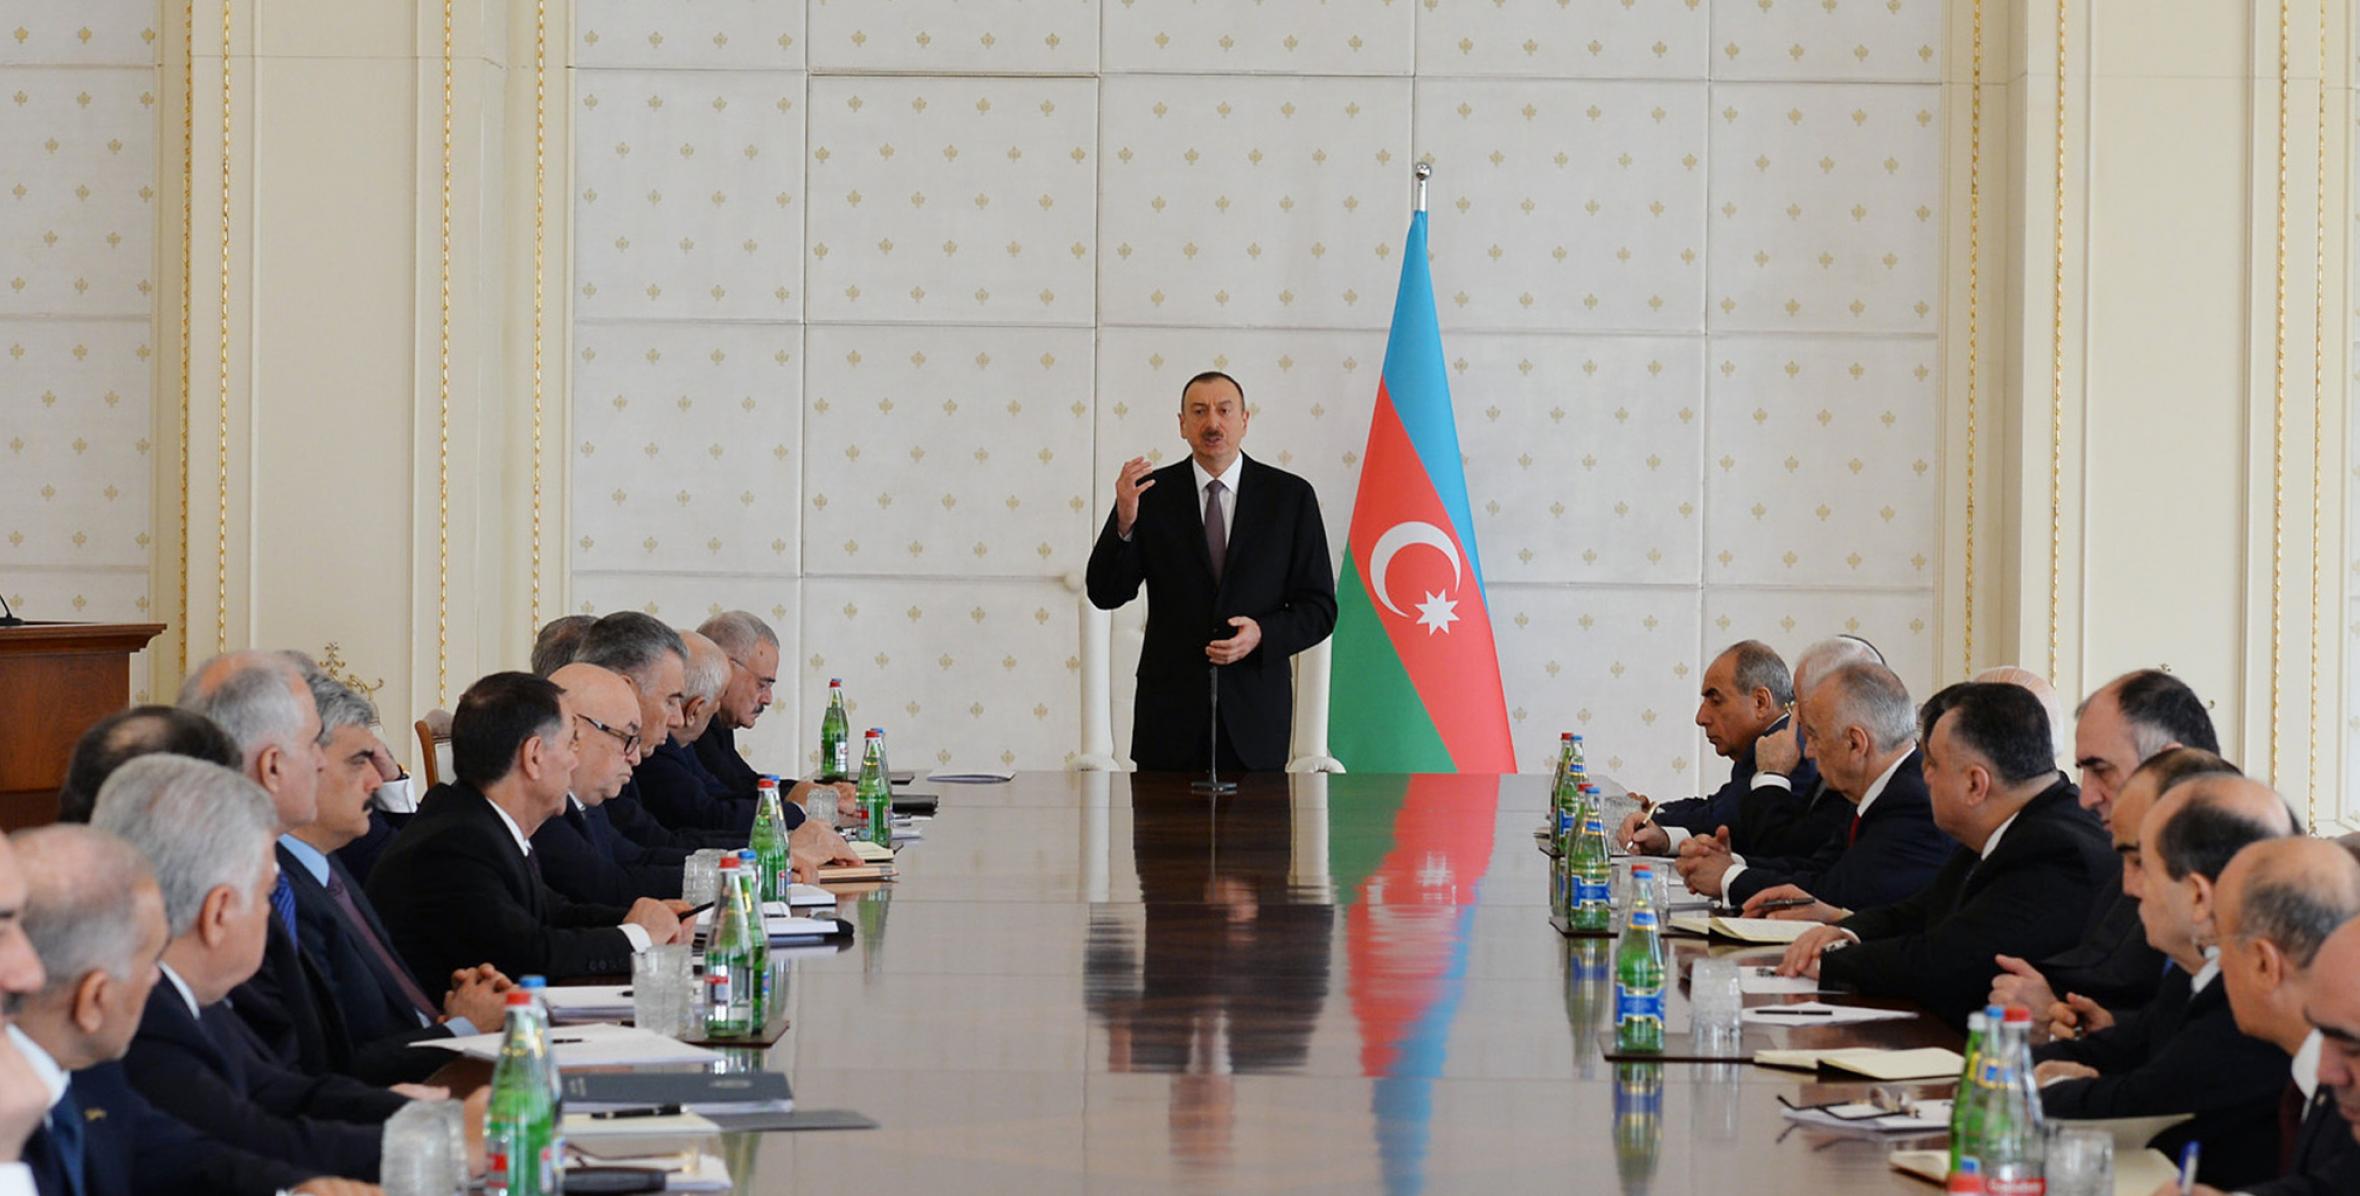 Вступительная речь Ильхама Алиева на заседании Кабинета Министров, посвященном итогам социально-экономического развития в первом квартале 2015 года и предстоящим задачам